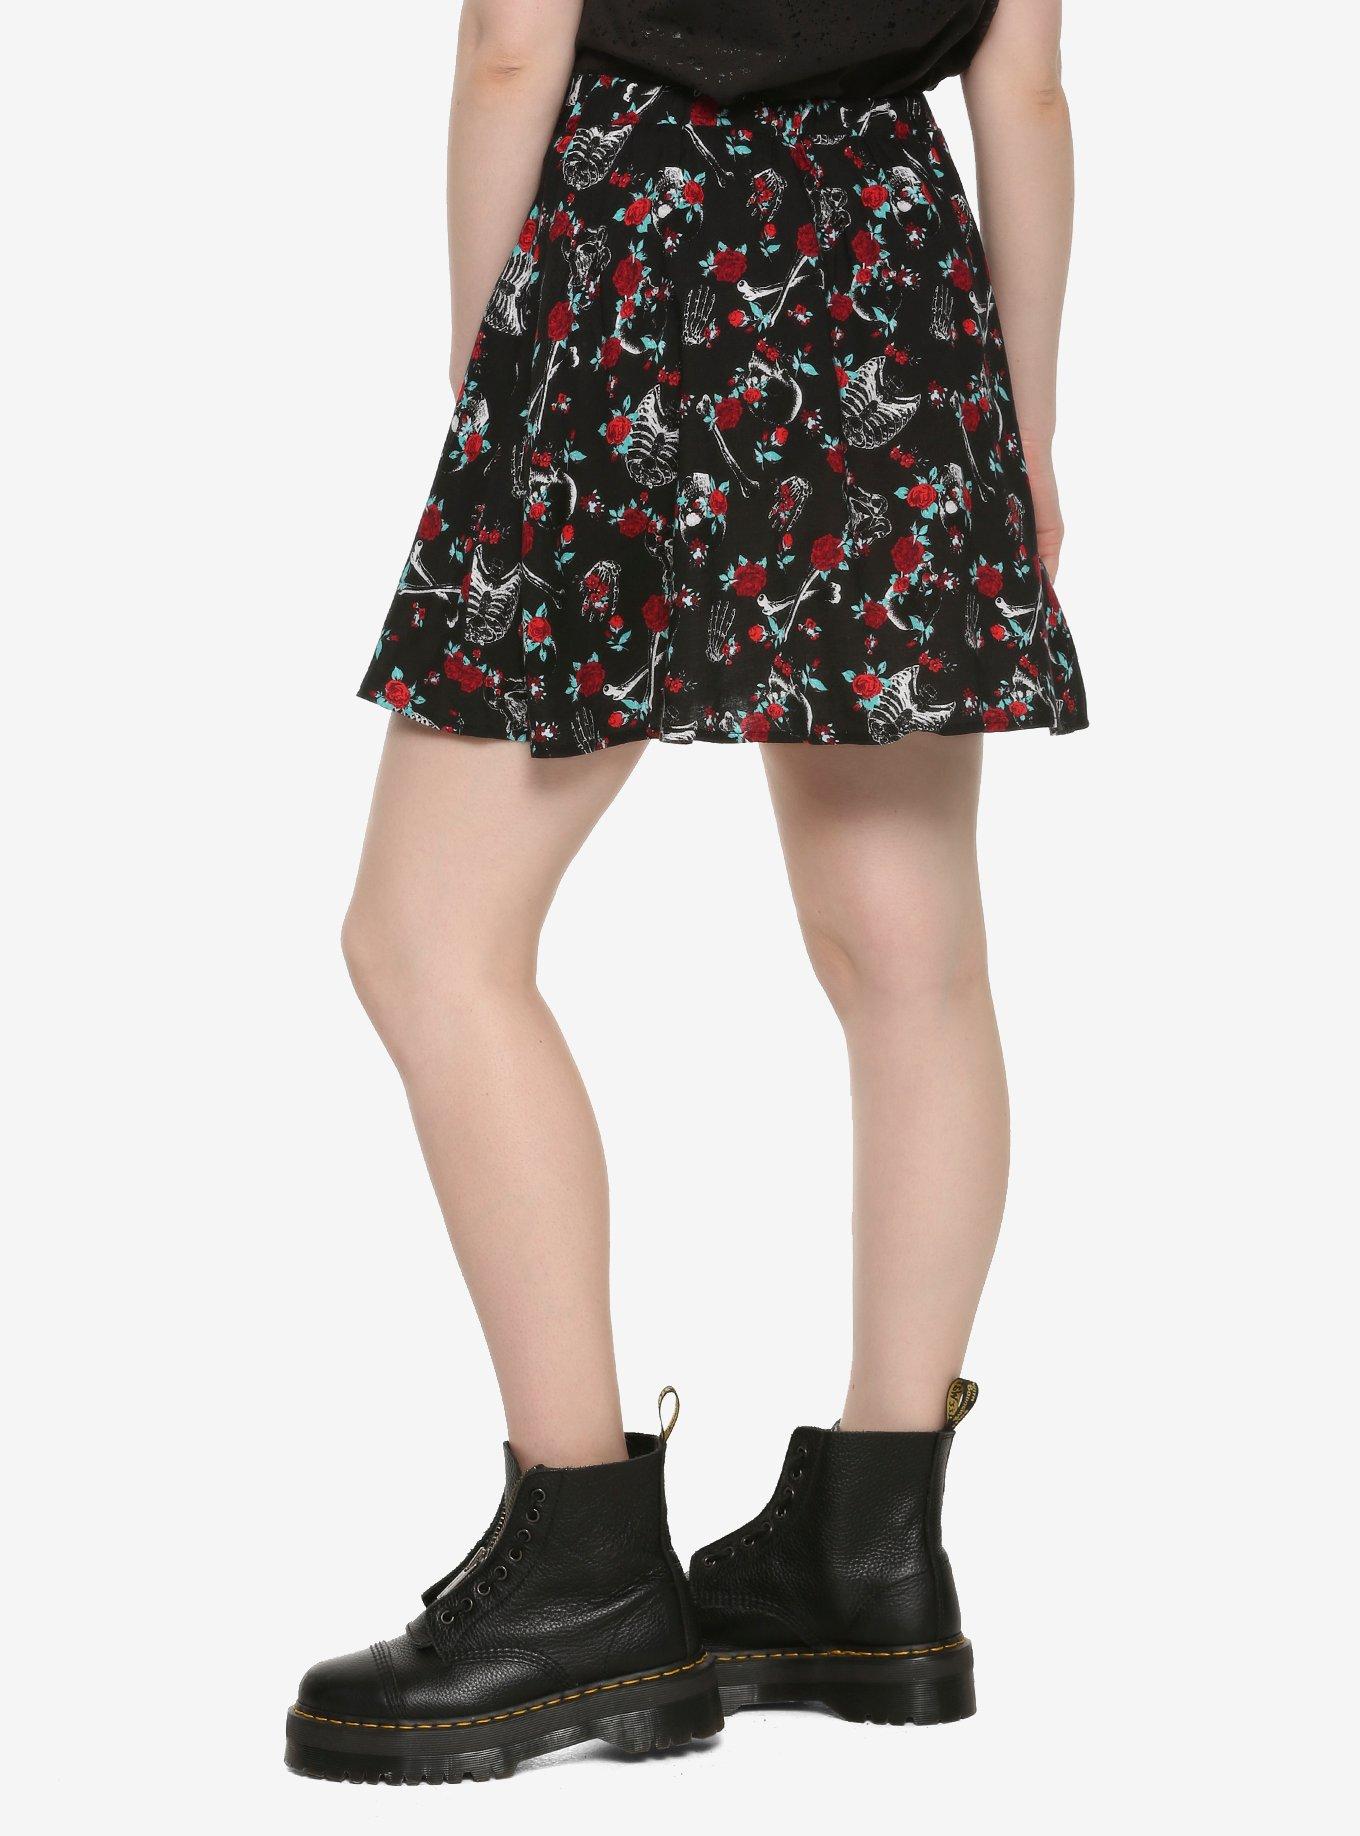 Skeletons & Roses Black Skirt, MULTI, alternate